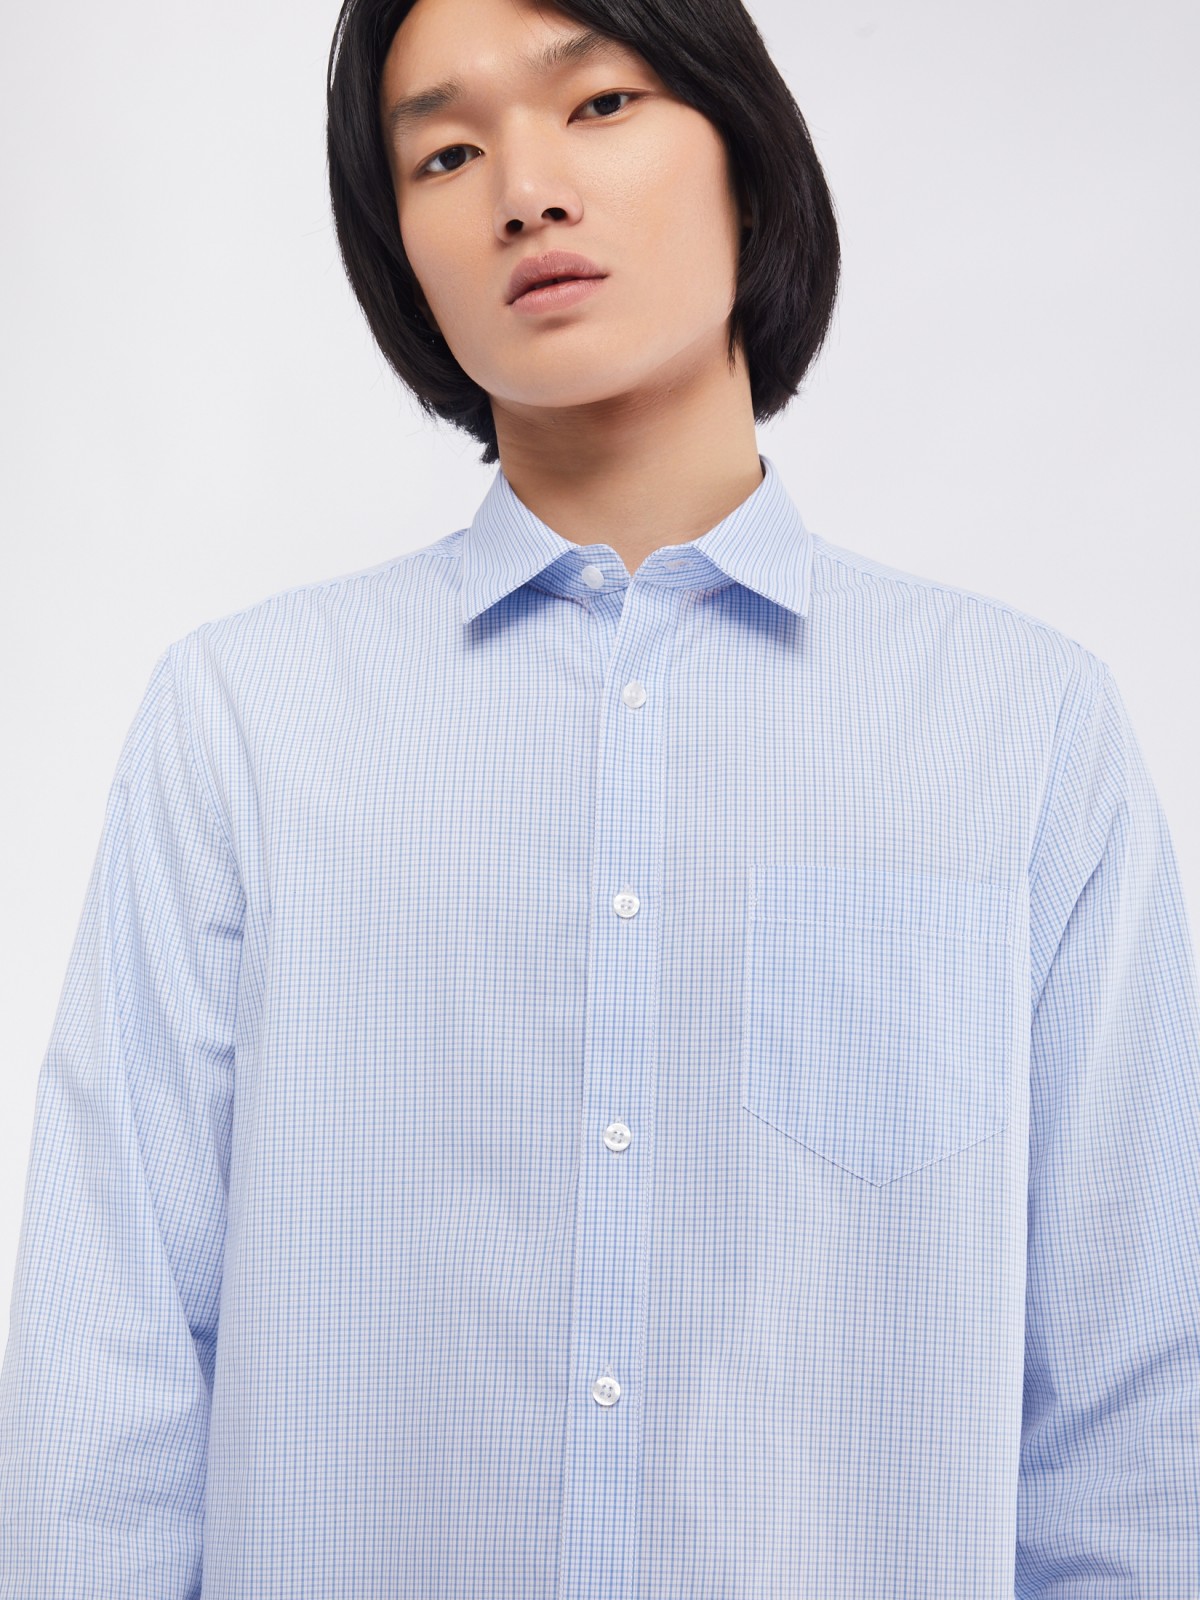 Офисная рубашка прямого силуэта с узором в клетку zolla 014112159062, цвет светло-голубой, размер M - фото 4